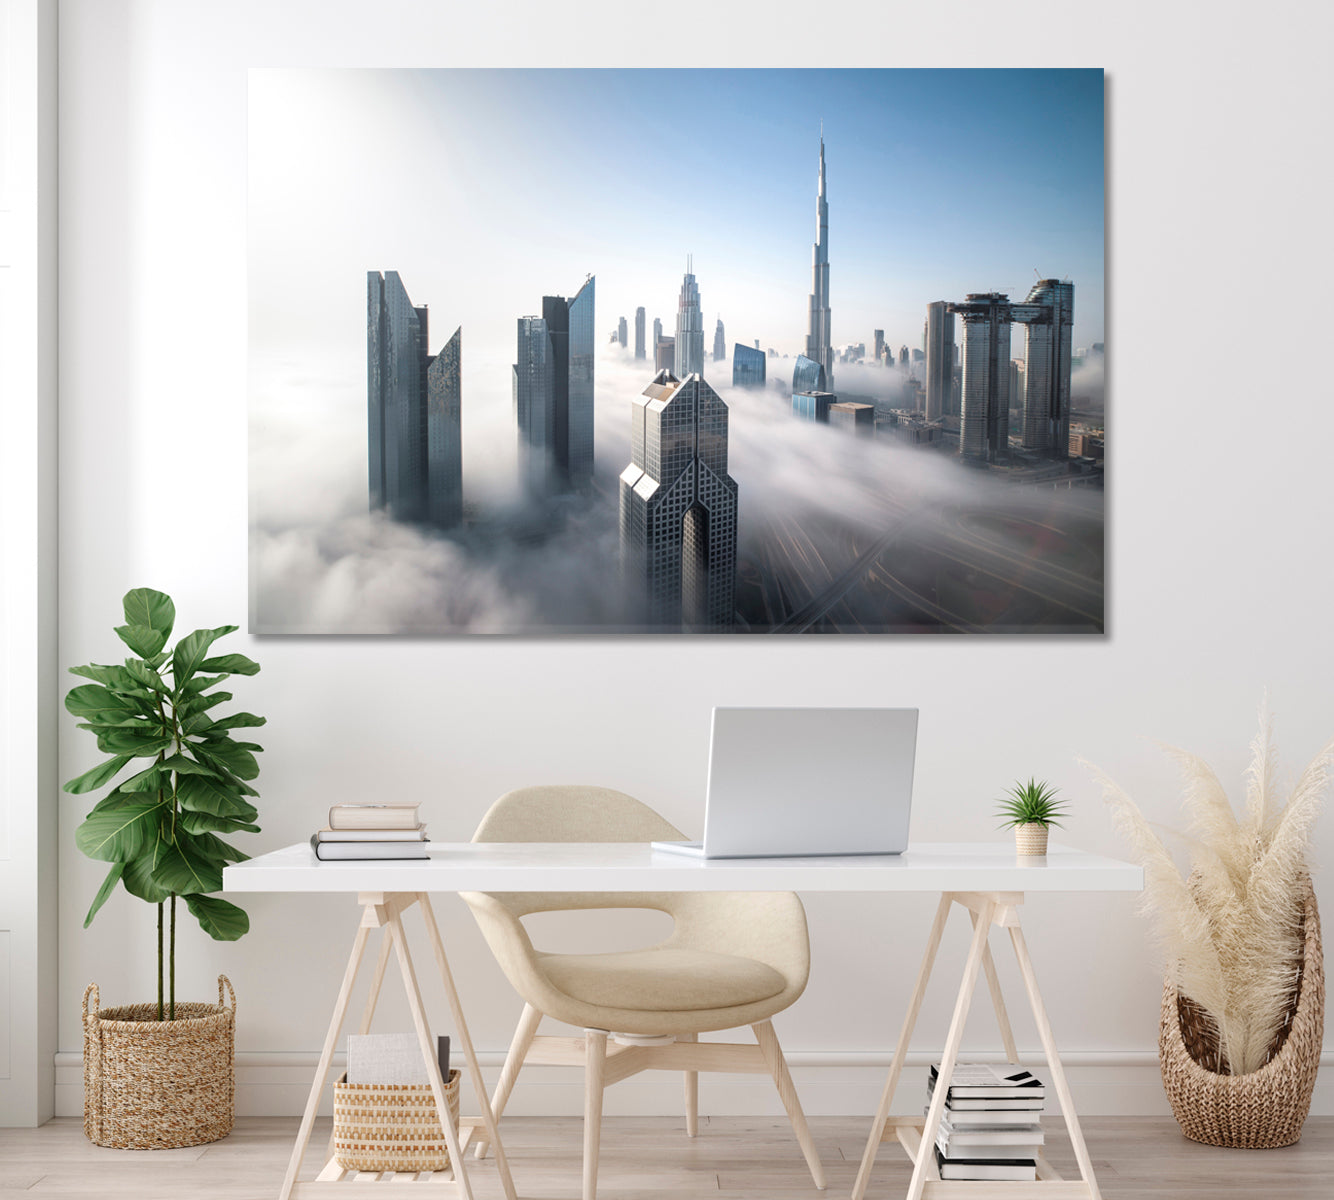 Dubai City Skyline in Fog Canvas Print ArtLexy 1 Panel 24"x16" inches 